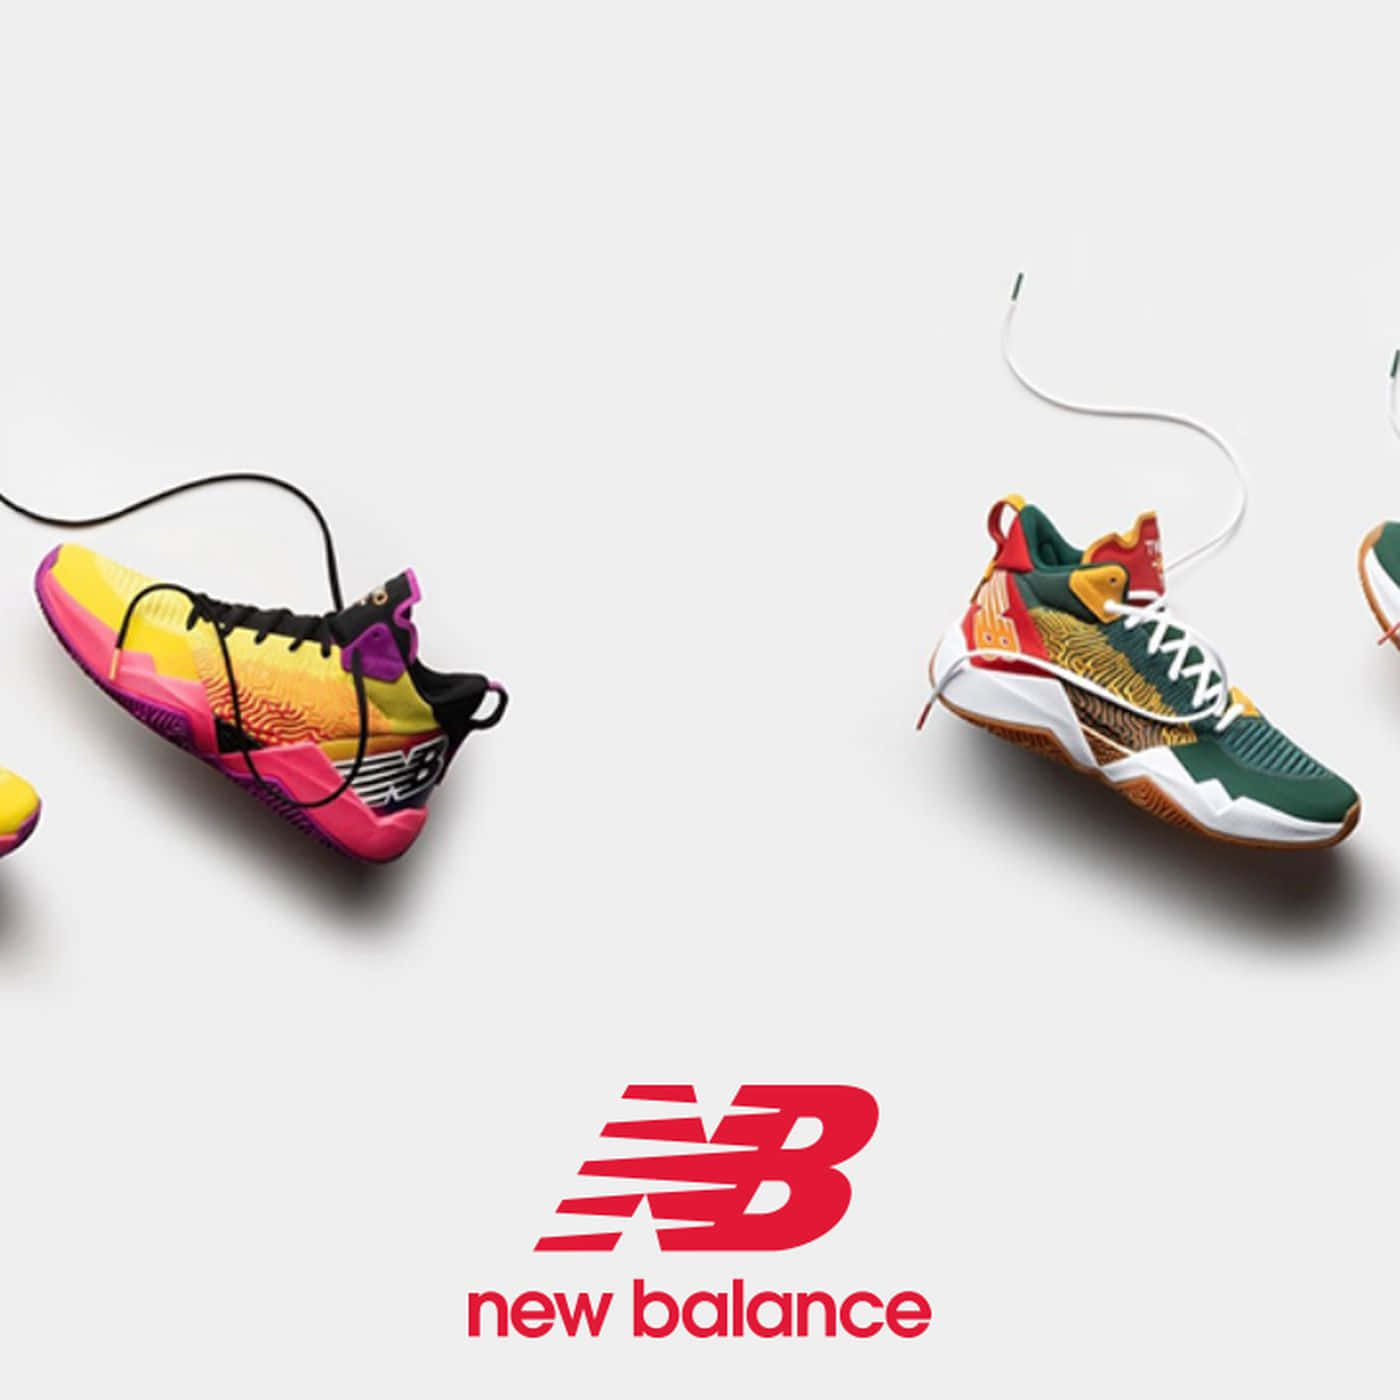 Blivklar Til At Træne Med Stil Med New Balance Sko.